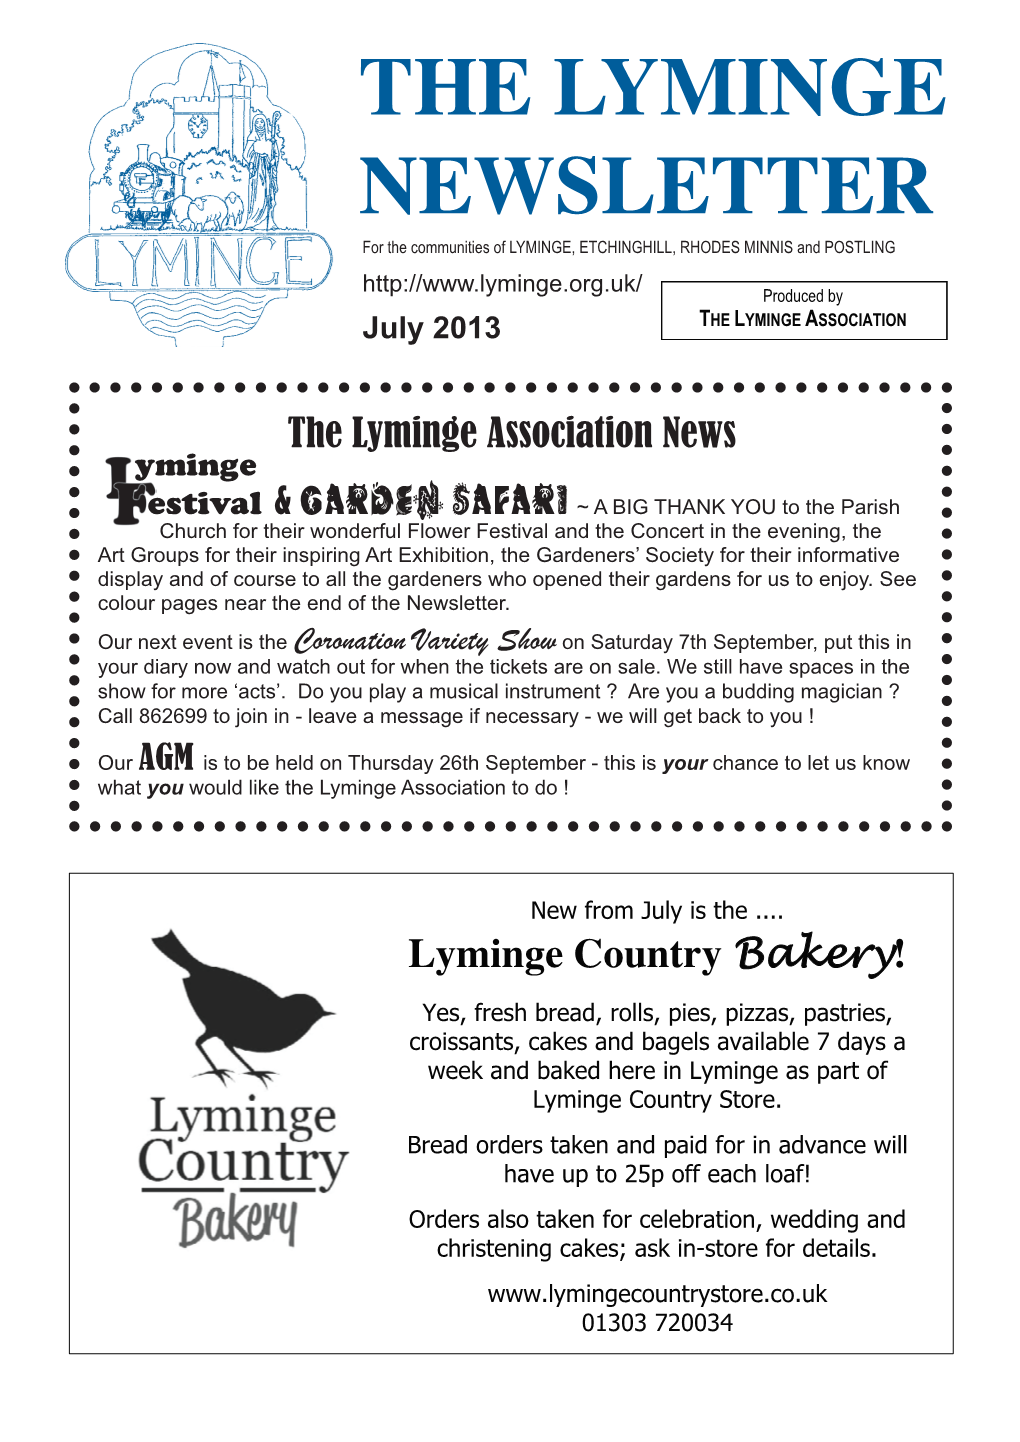 The Lyminge Newsletter